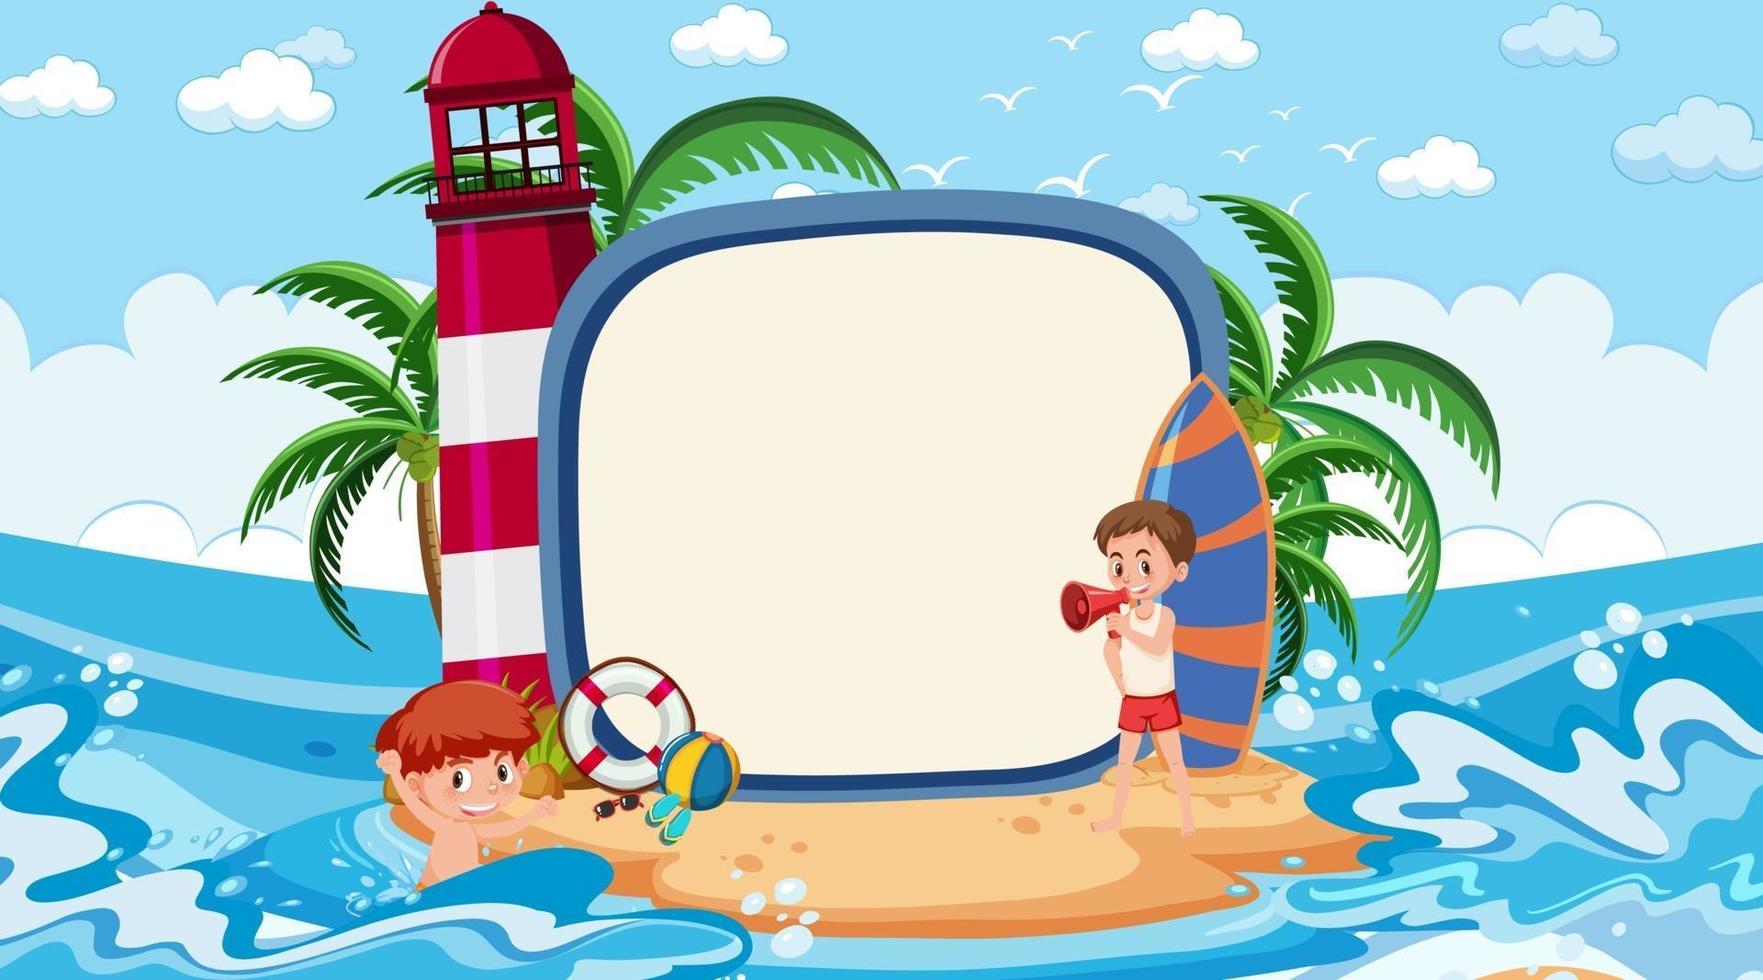 leere Fahnenschablone mit Kindern im Urlaub an der Tagesszene des Strandes vektor